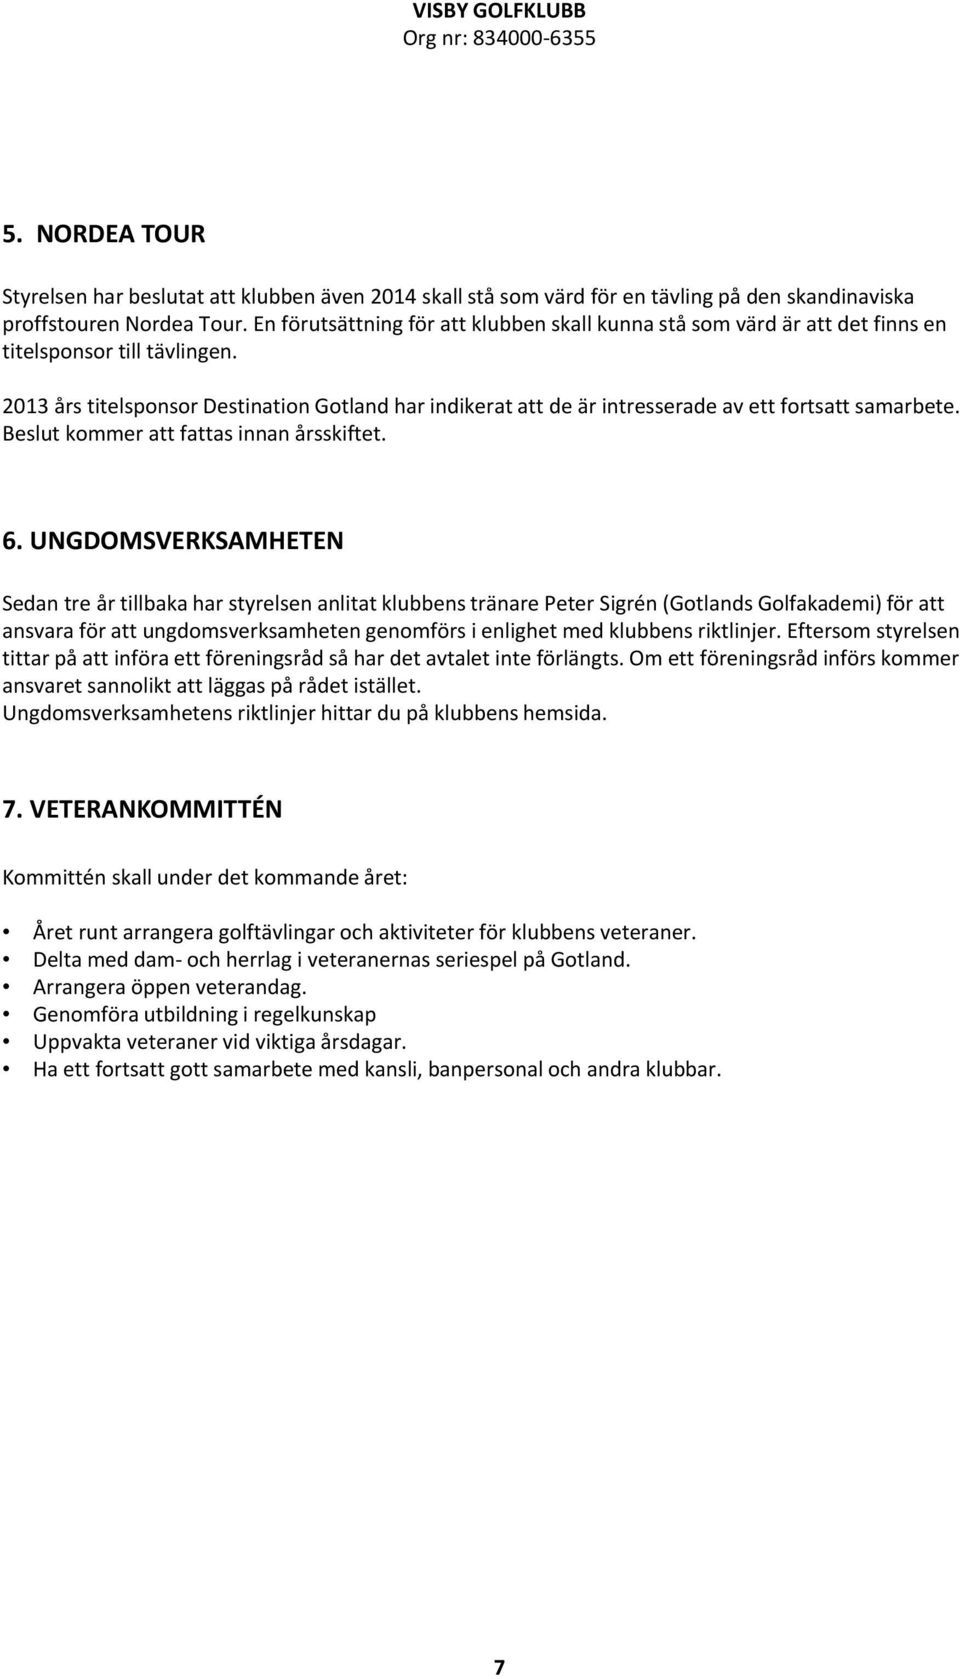 2013 års titelsponsor Destination Gotland har indikerat att de är intresserade av ett fortsatt samarbete. Beslut kommer att fattas innan årsskiftet. 6.